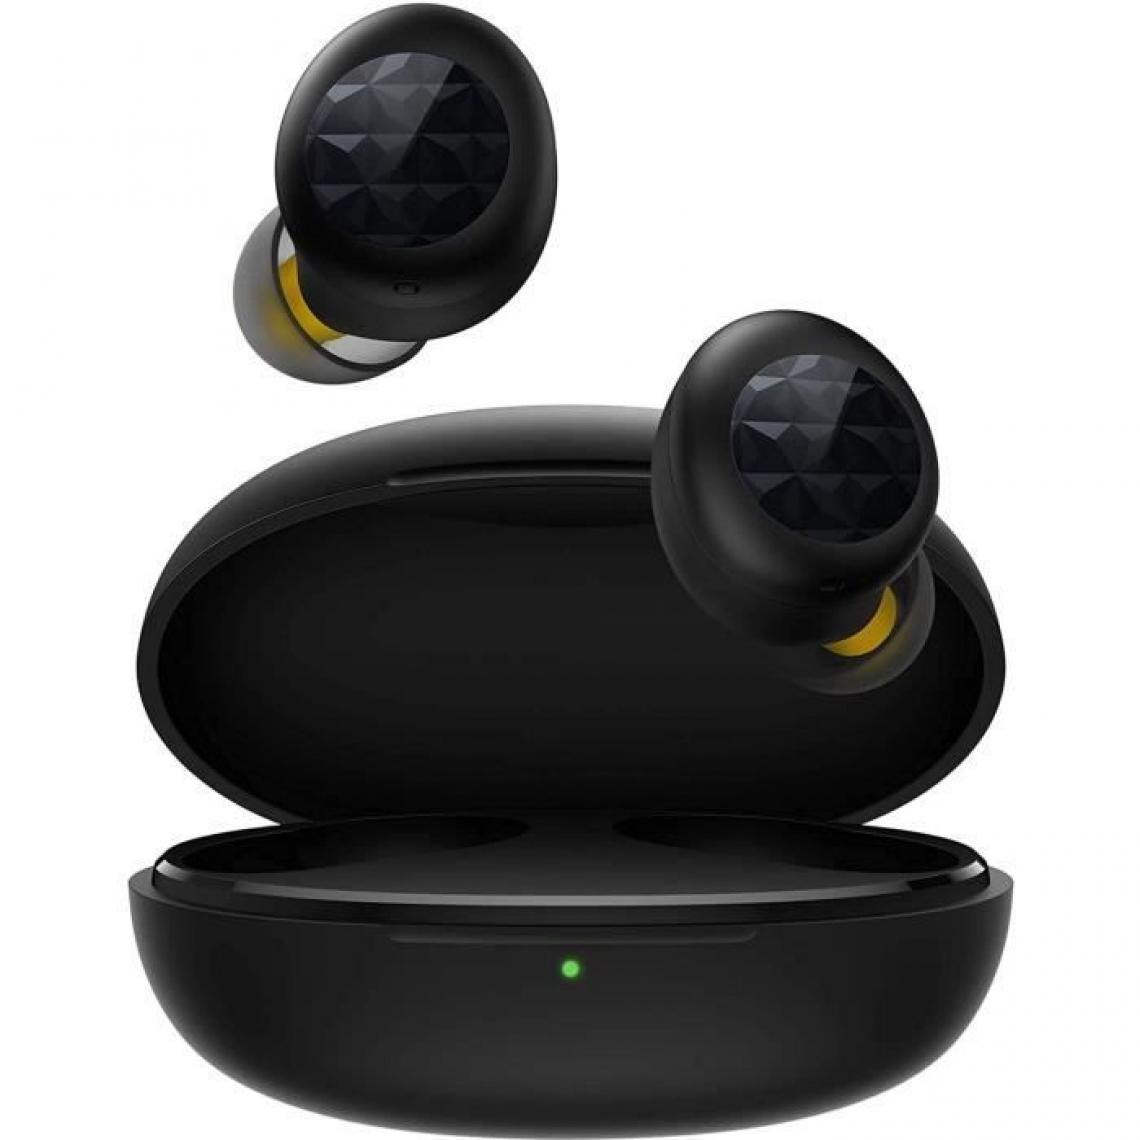 Realme - REALME BUDS Q2 - Ecouteurs Bluetooth - 20h de lecture - Réduction de bruit - Mode jeu - Résistant à l'eau IPX4 - Noir - Ecouteurs intra-auriculaires